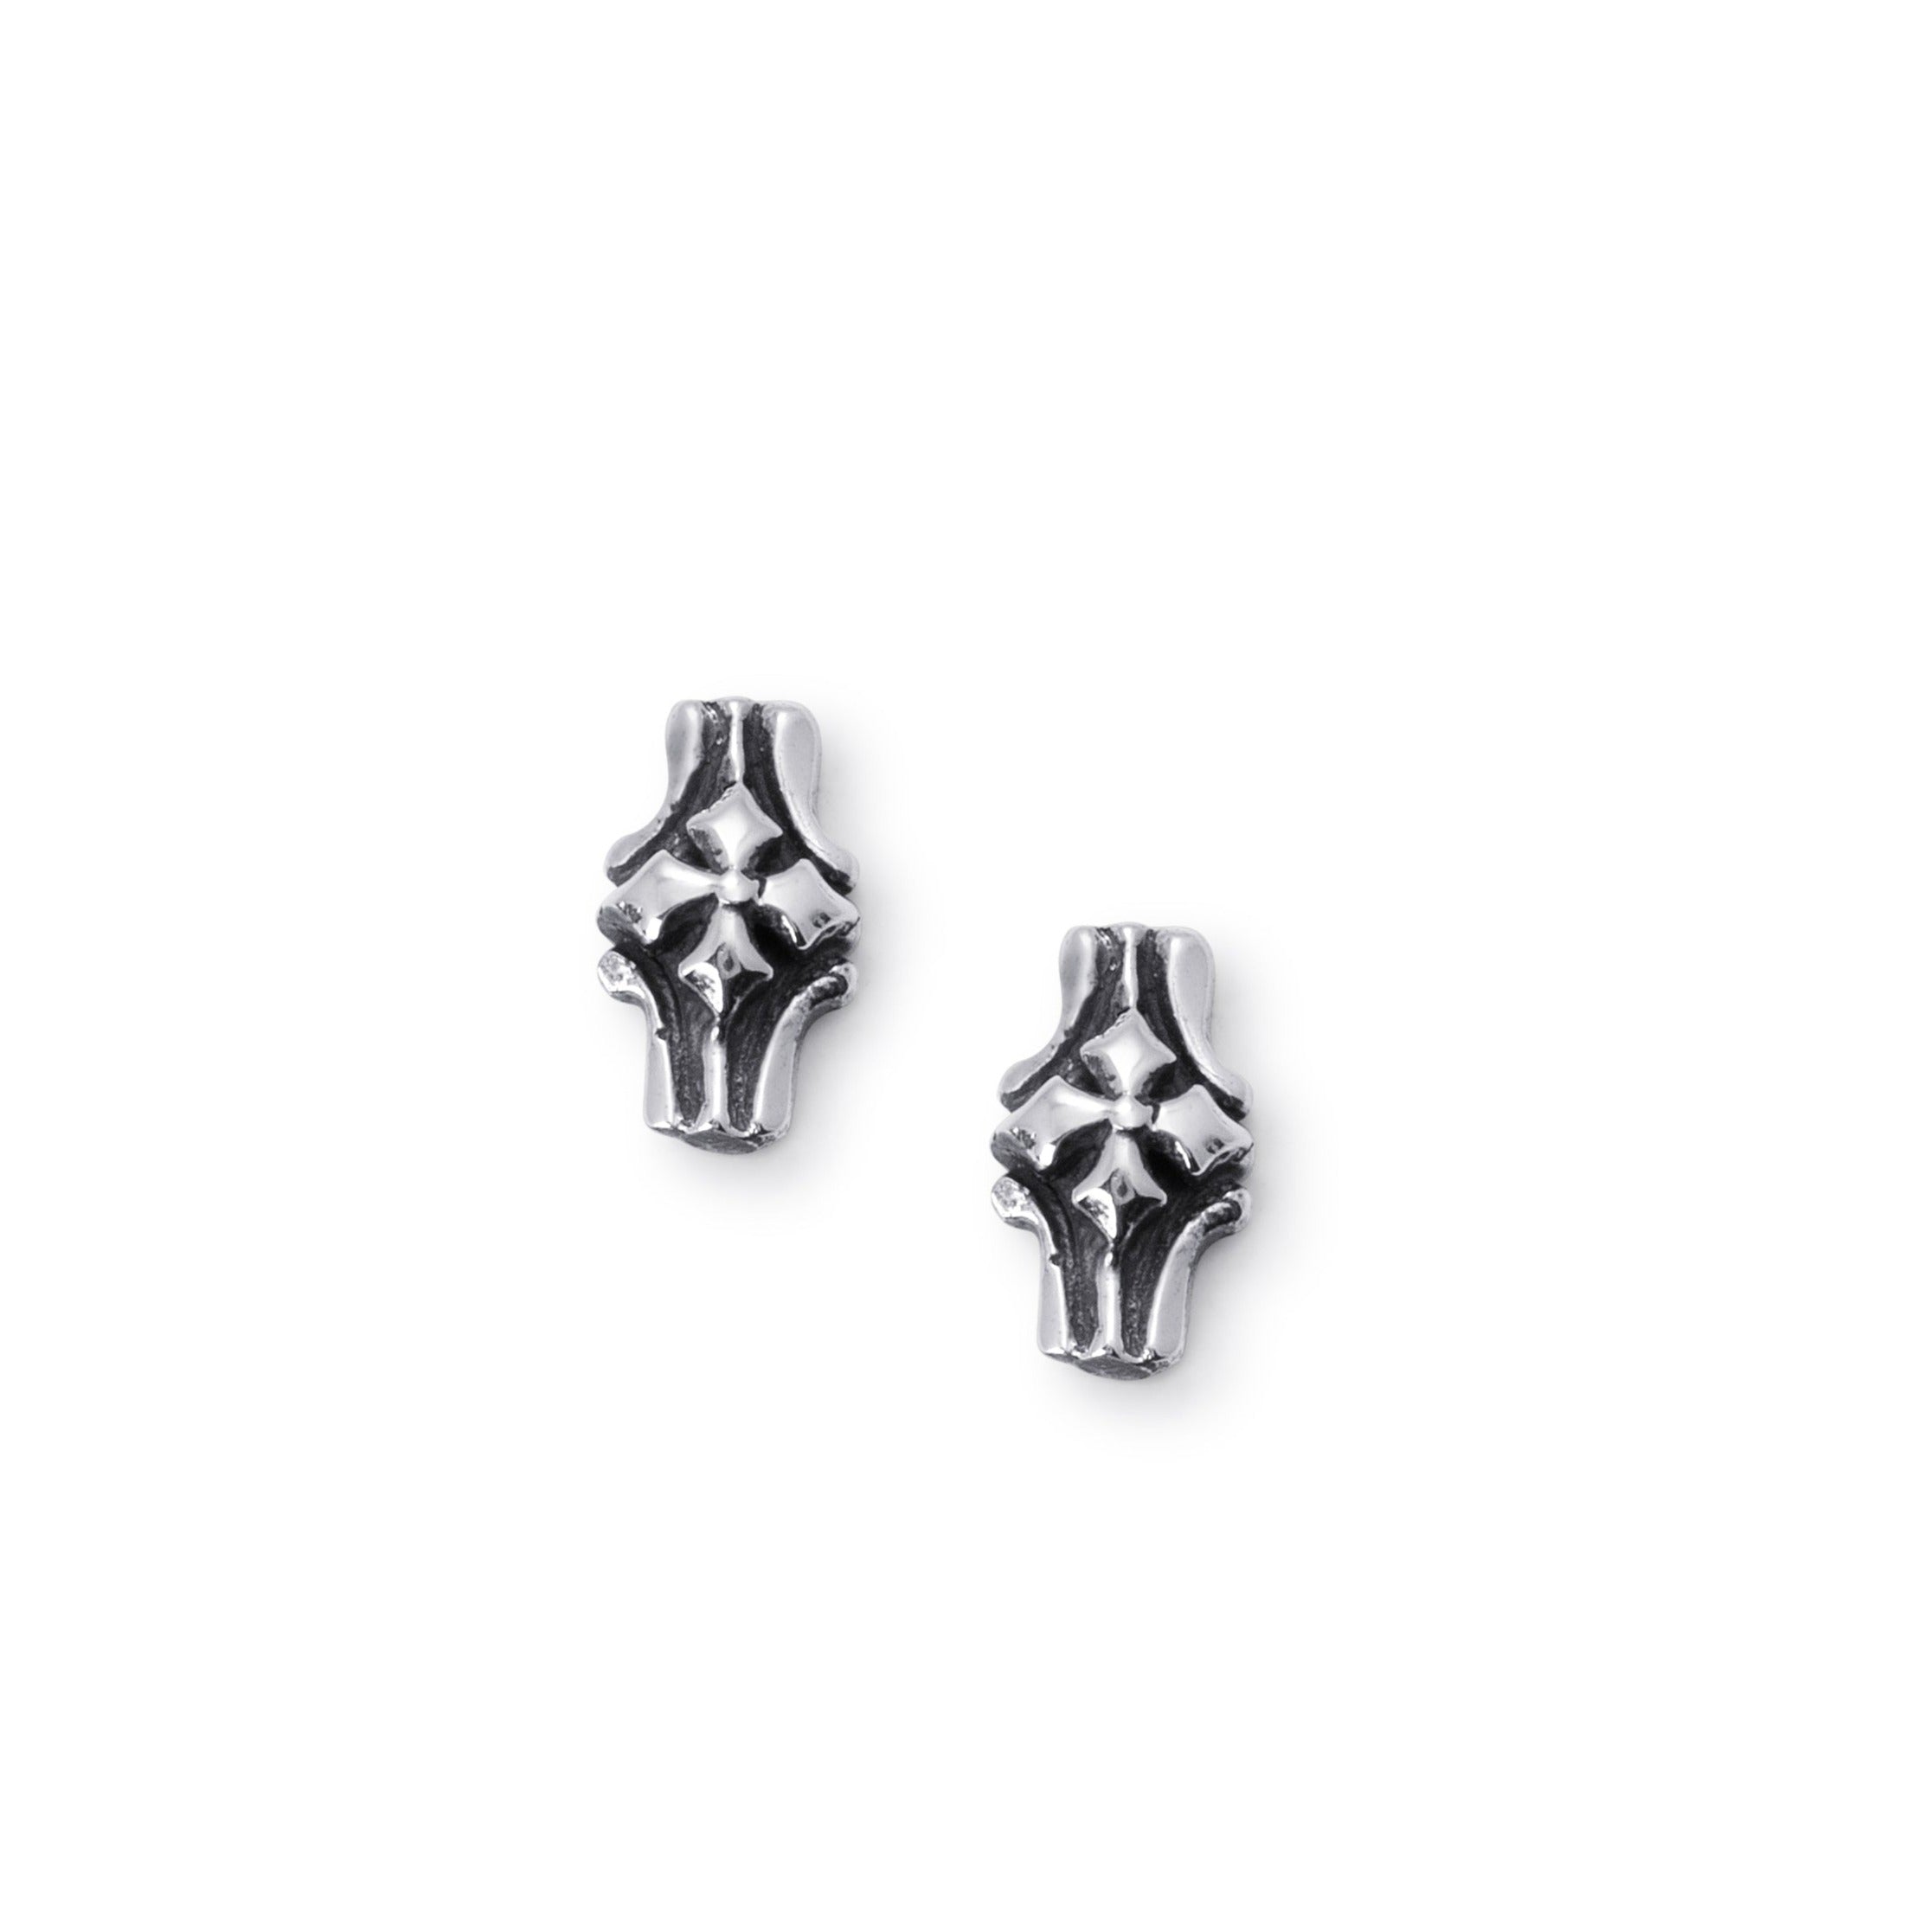 Barcelona Stud Earrings In Sterling Silver, 11mm